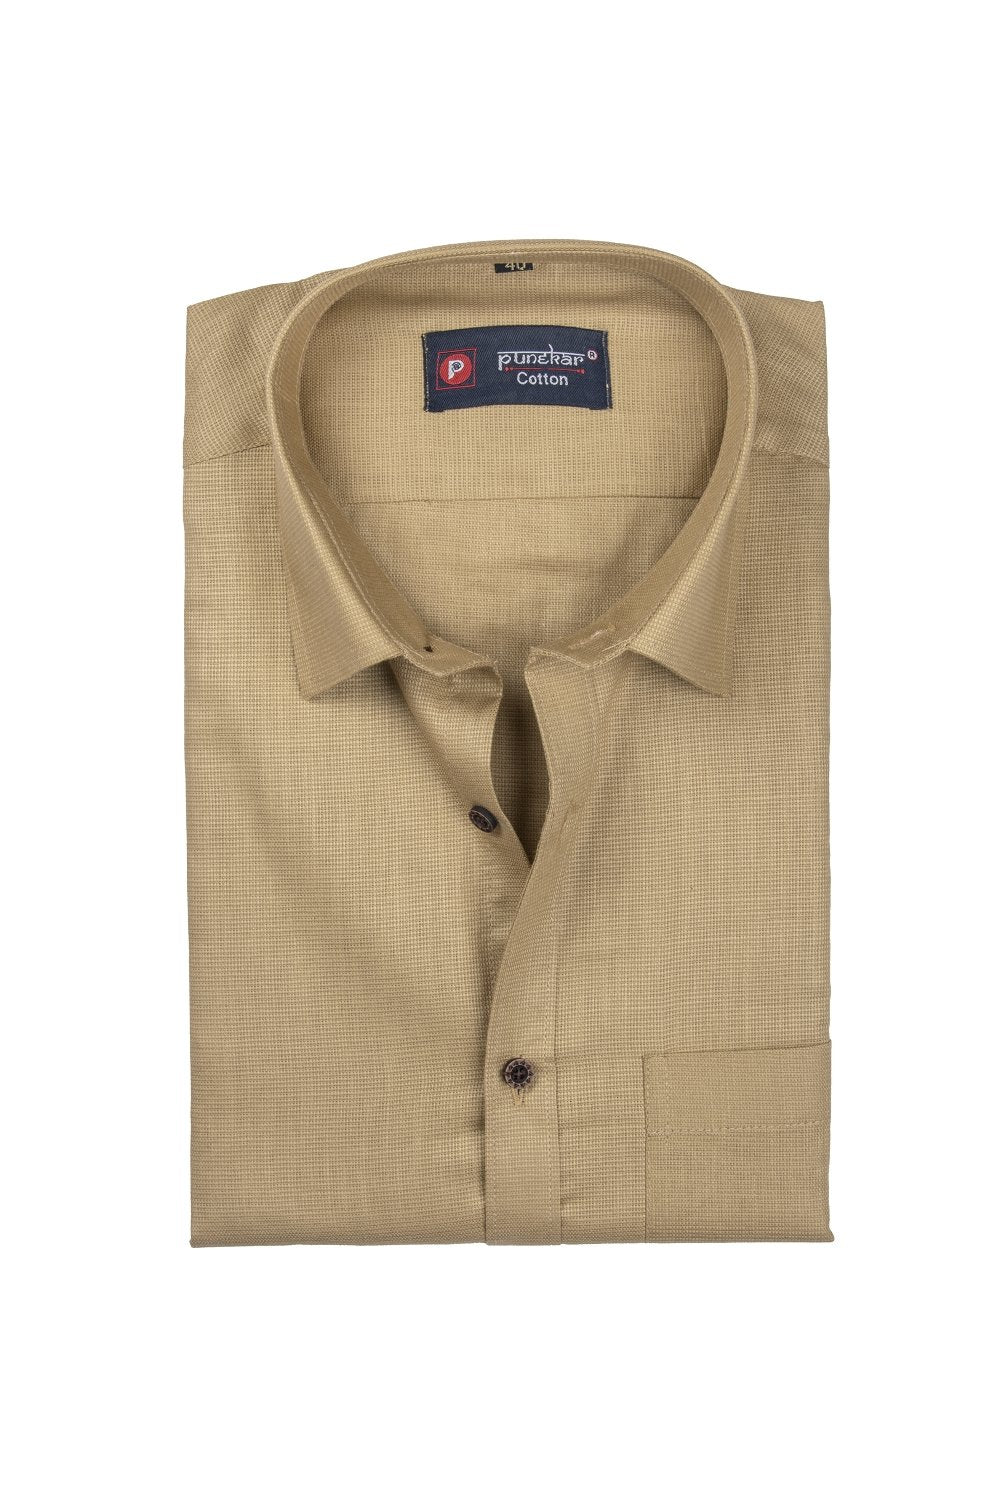 Punekar Cotton Light Brown Color Silky Linen Cotton Shirt for Men&